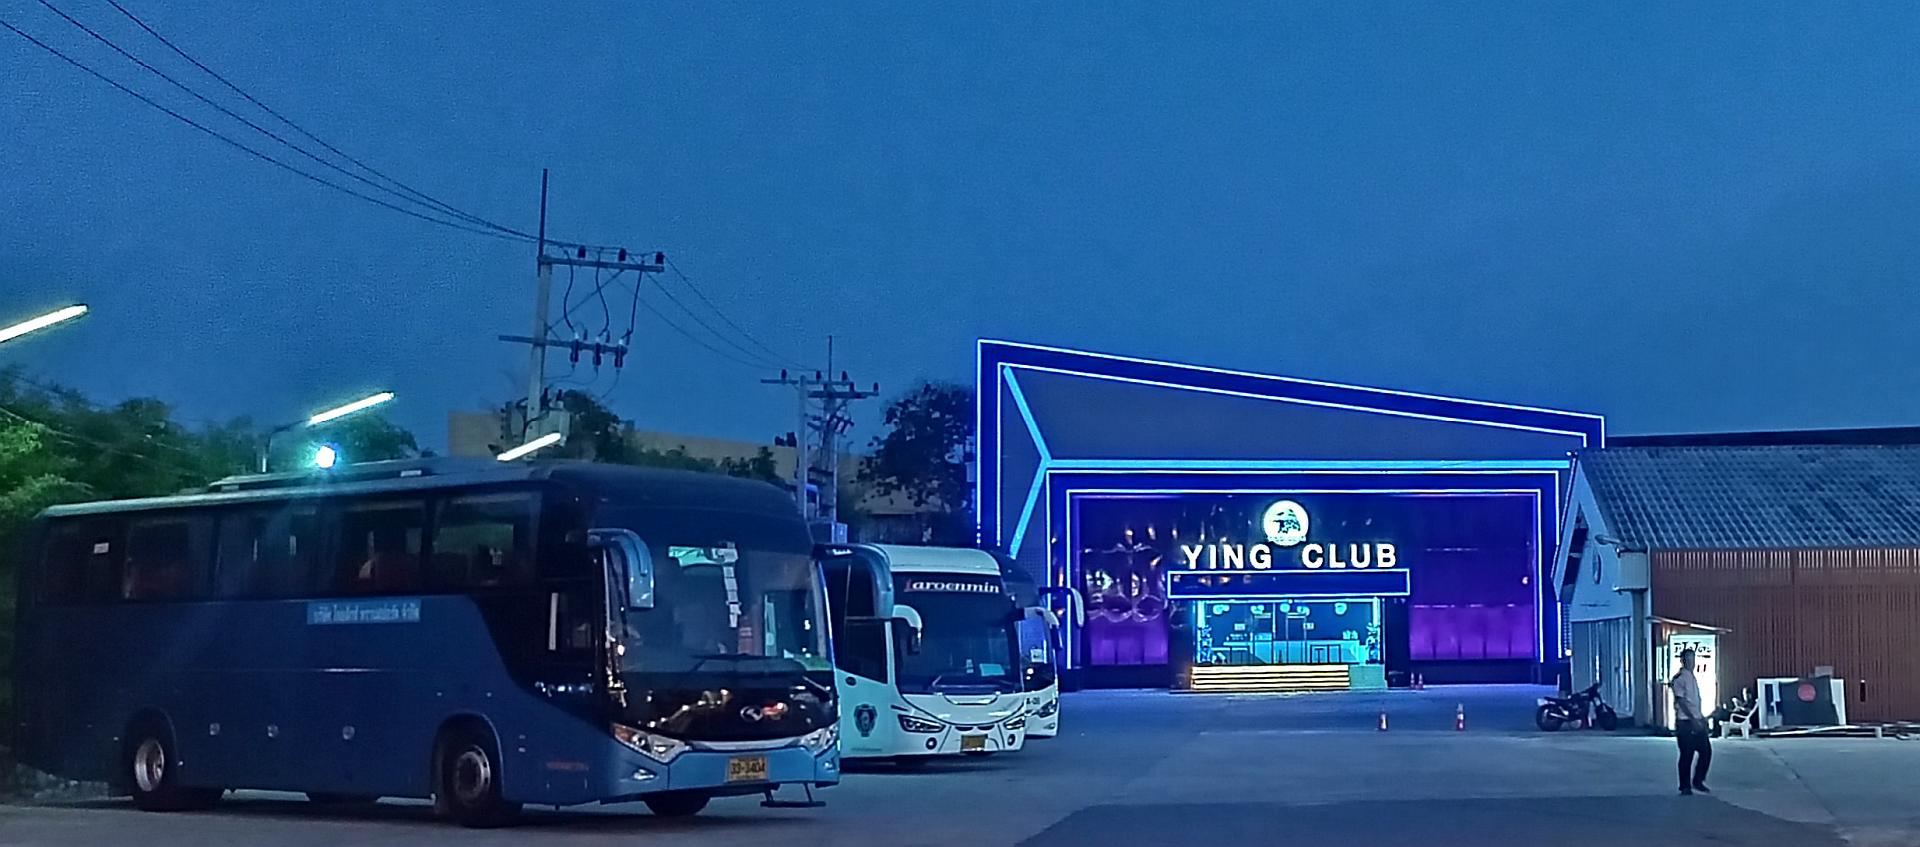 Ying Club, 3rd Road Pattaya